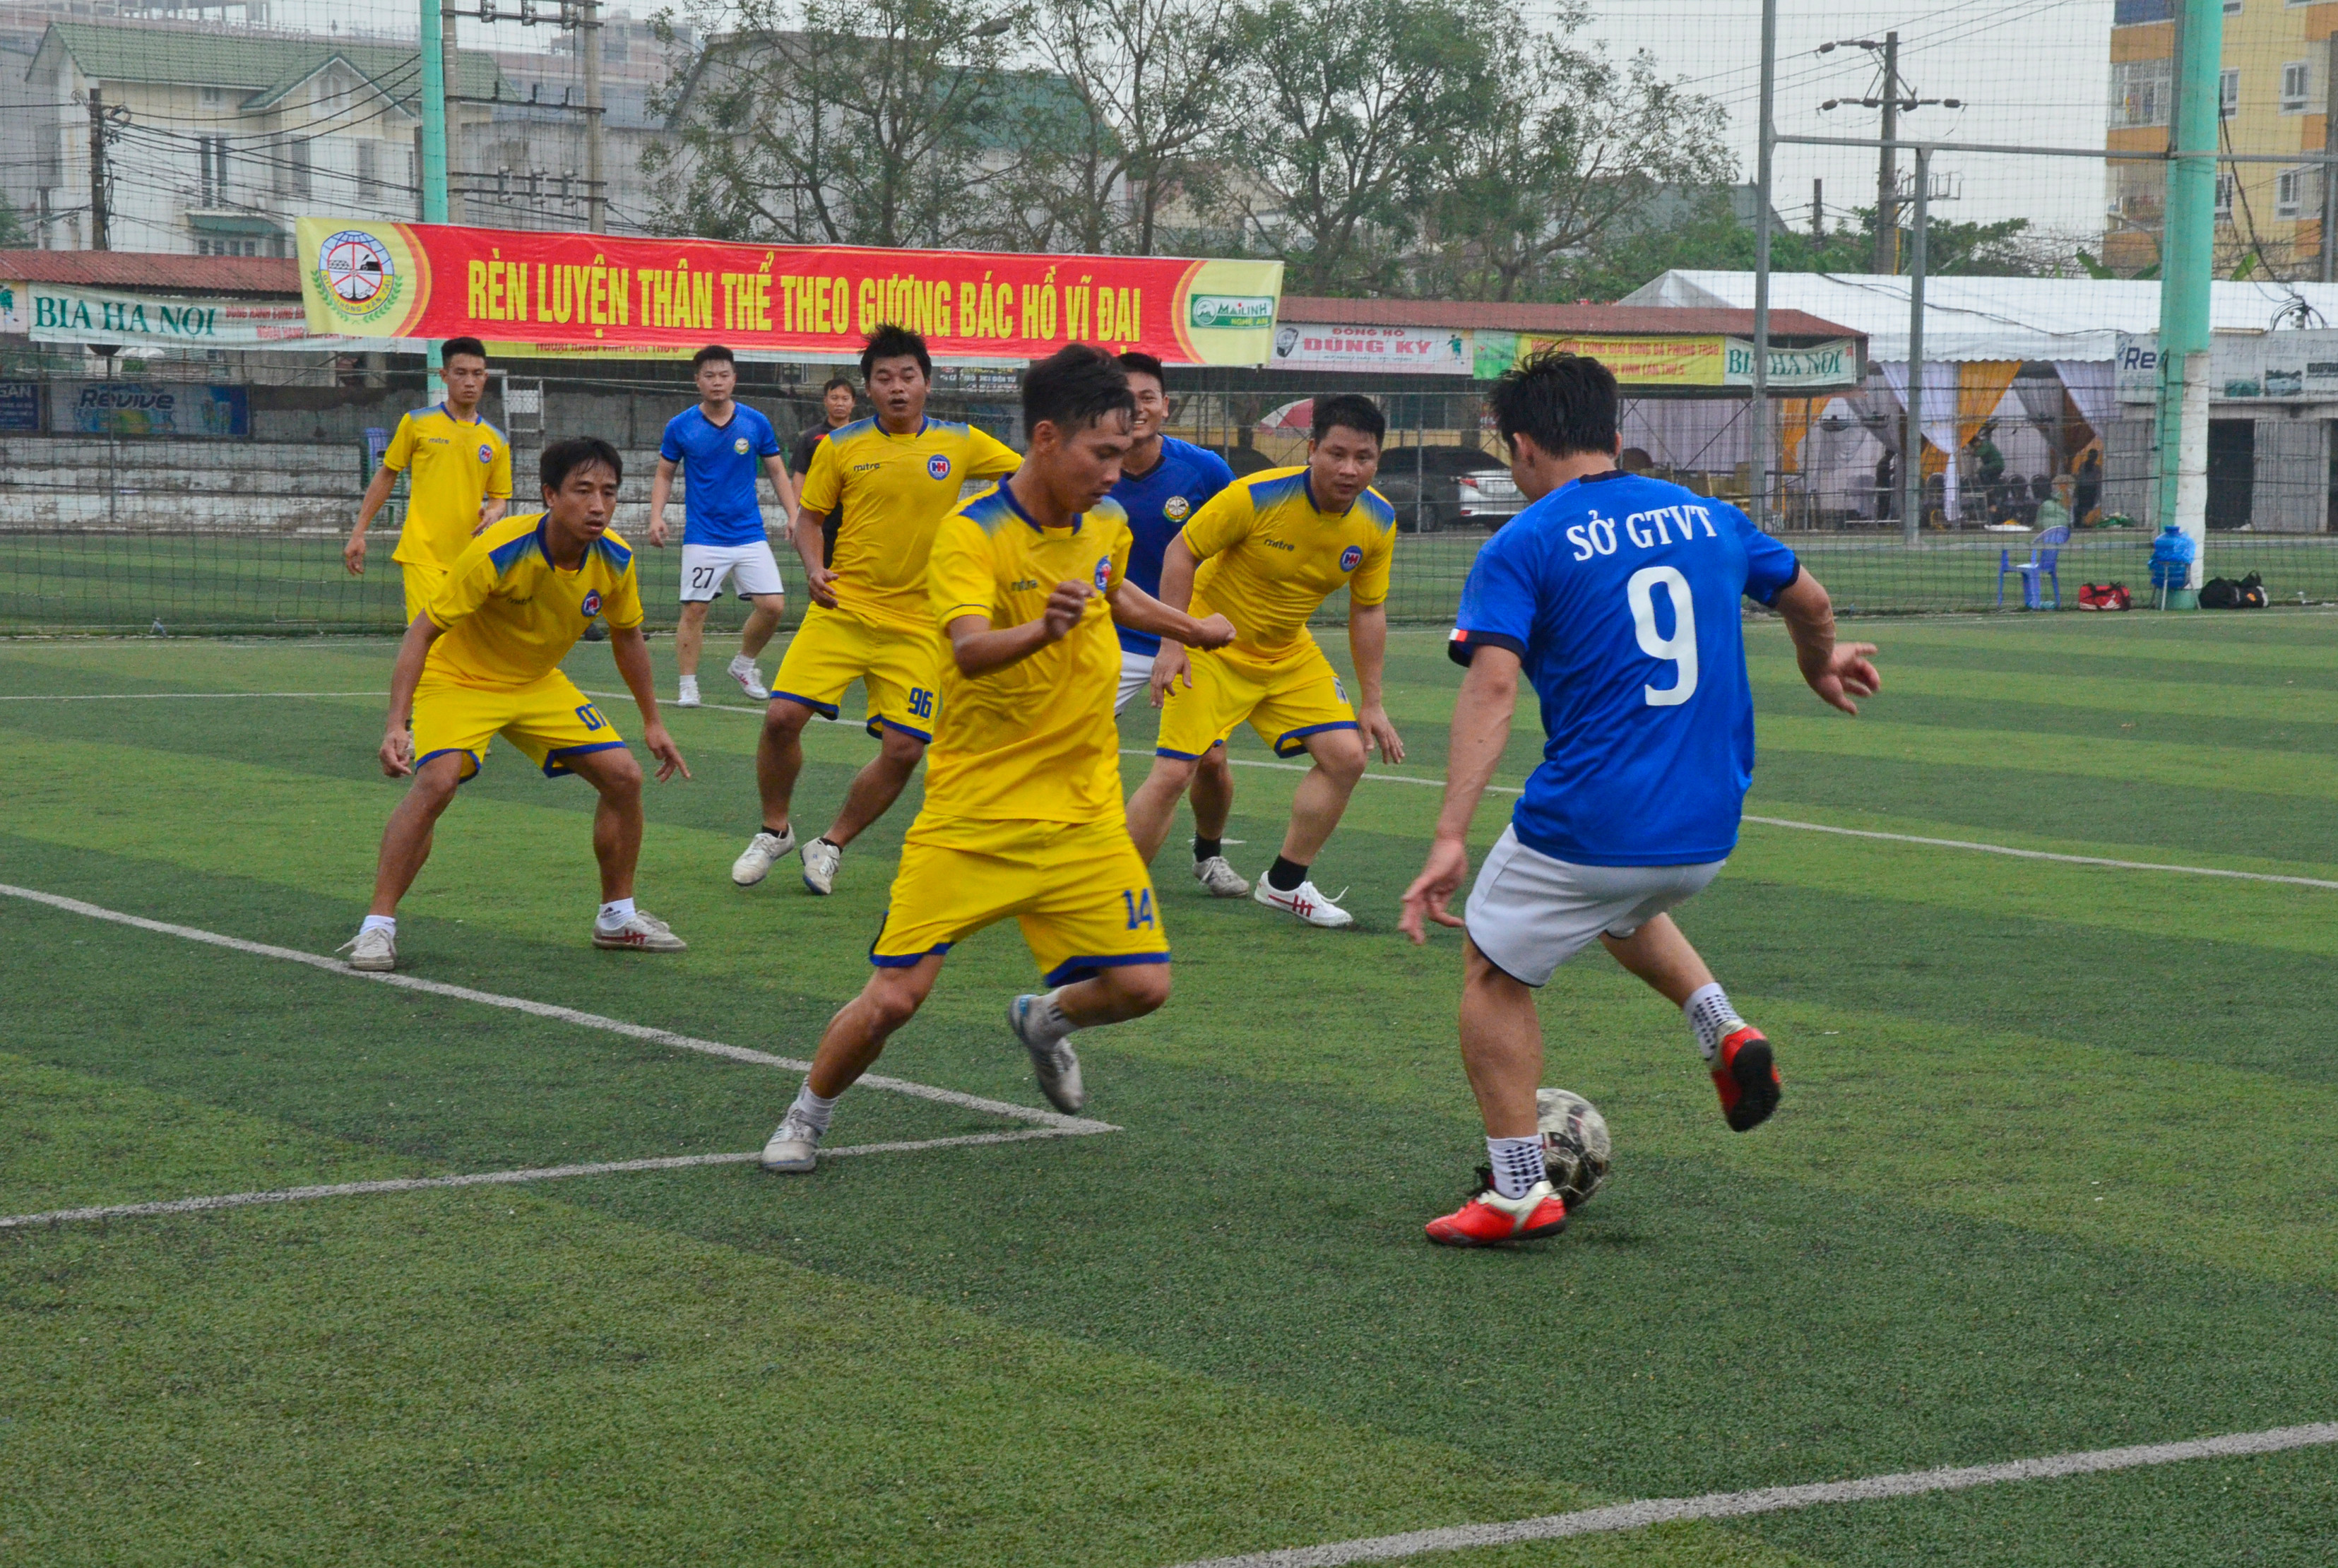 Trận đấu bóng đá giữa đội Văn phòng Sở Giao thông vận tải và Công ty Hòa Hiệp. Ảnh Thanh Lê